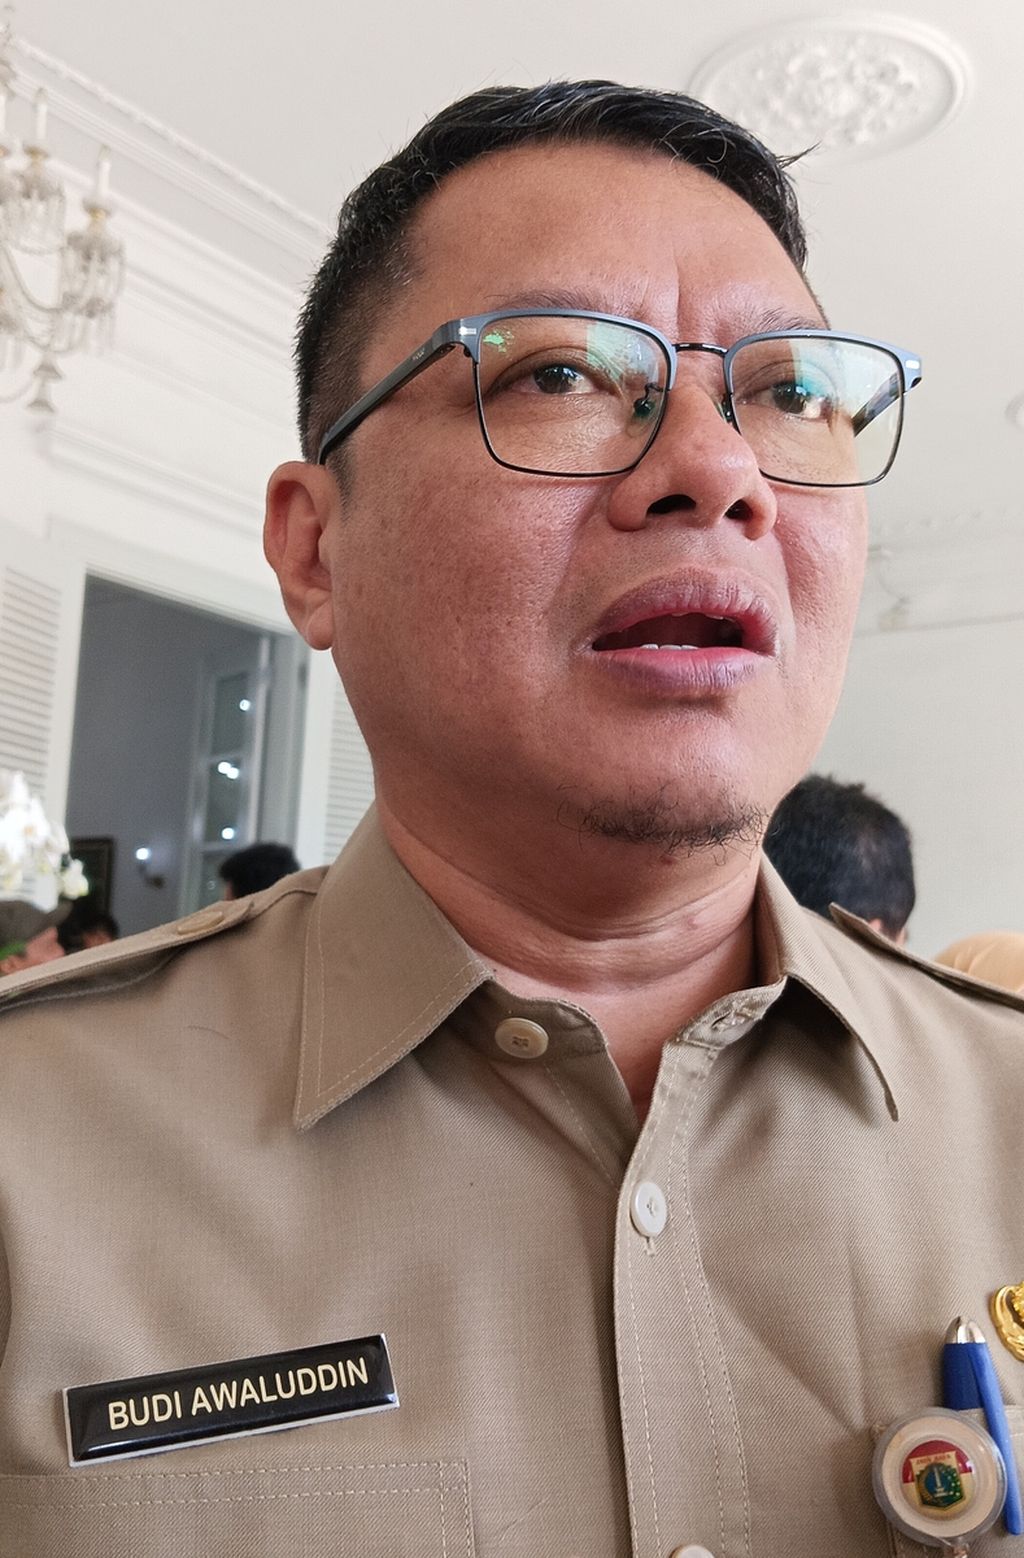 Kepala Dinas Kependudukan dan Pencatatan Sipil DKI Jakarta Budi Awaluddin.